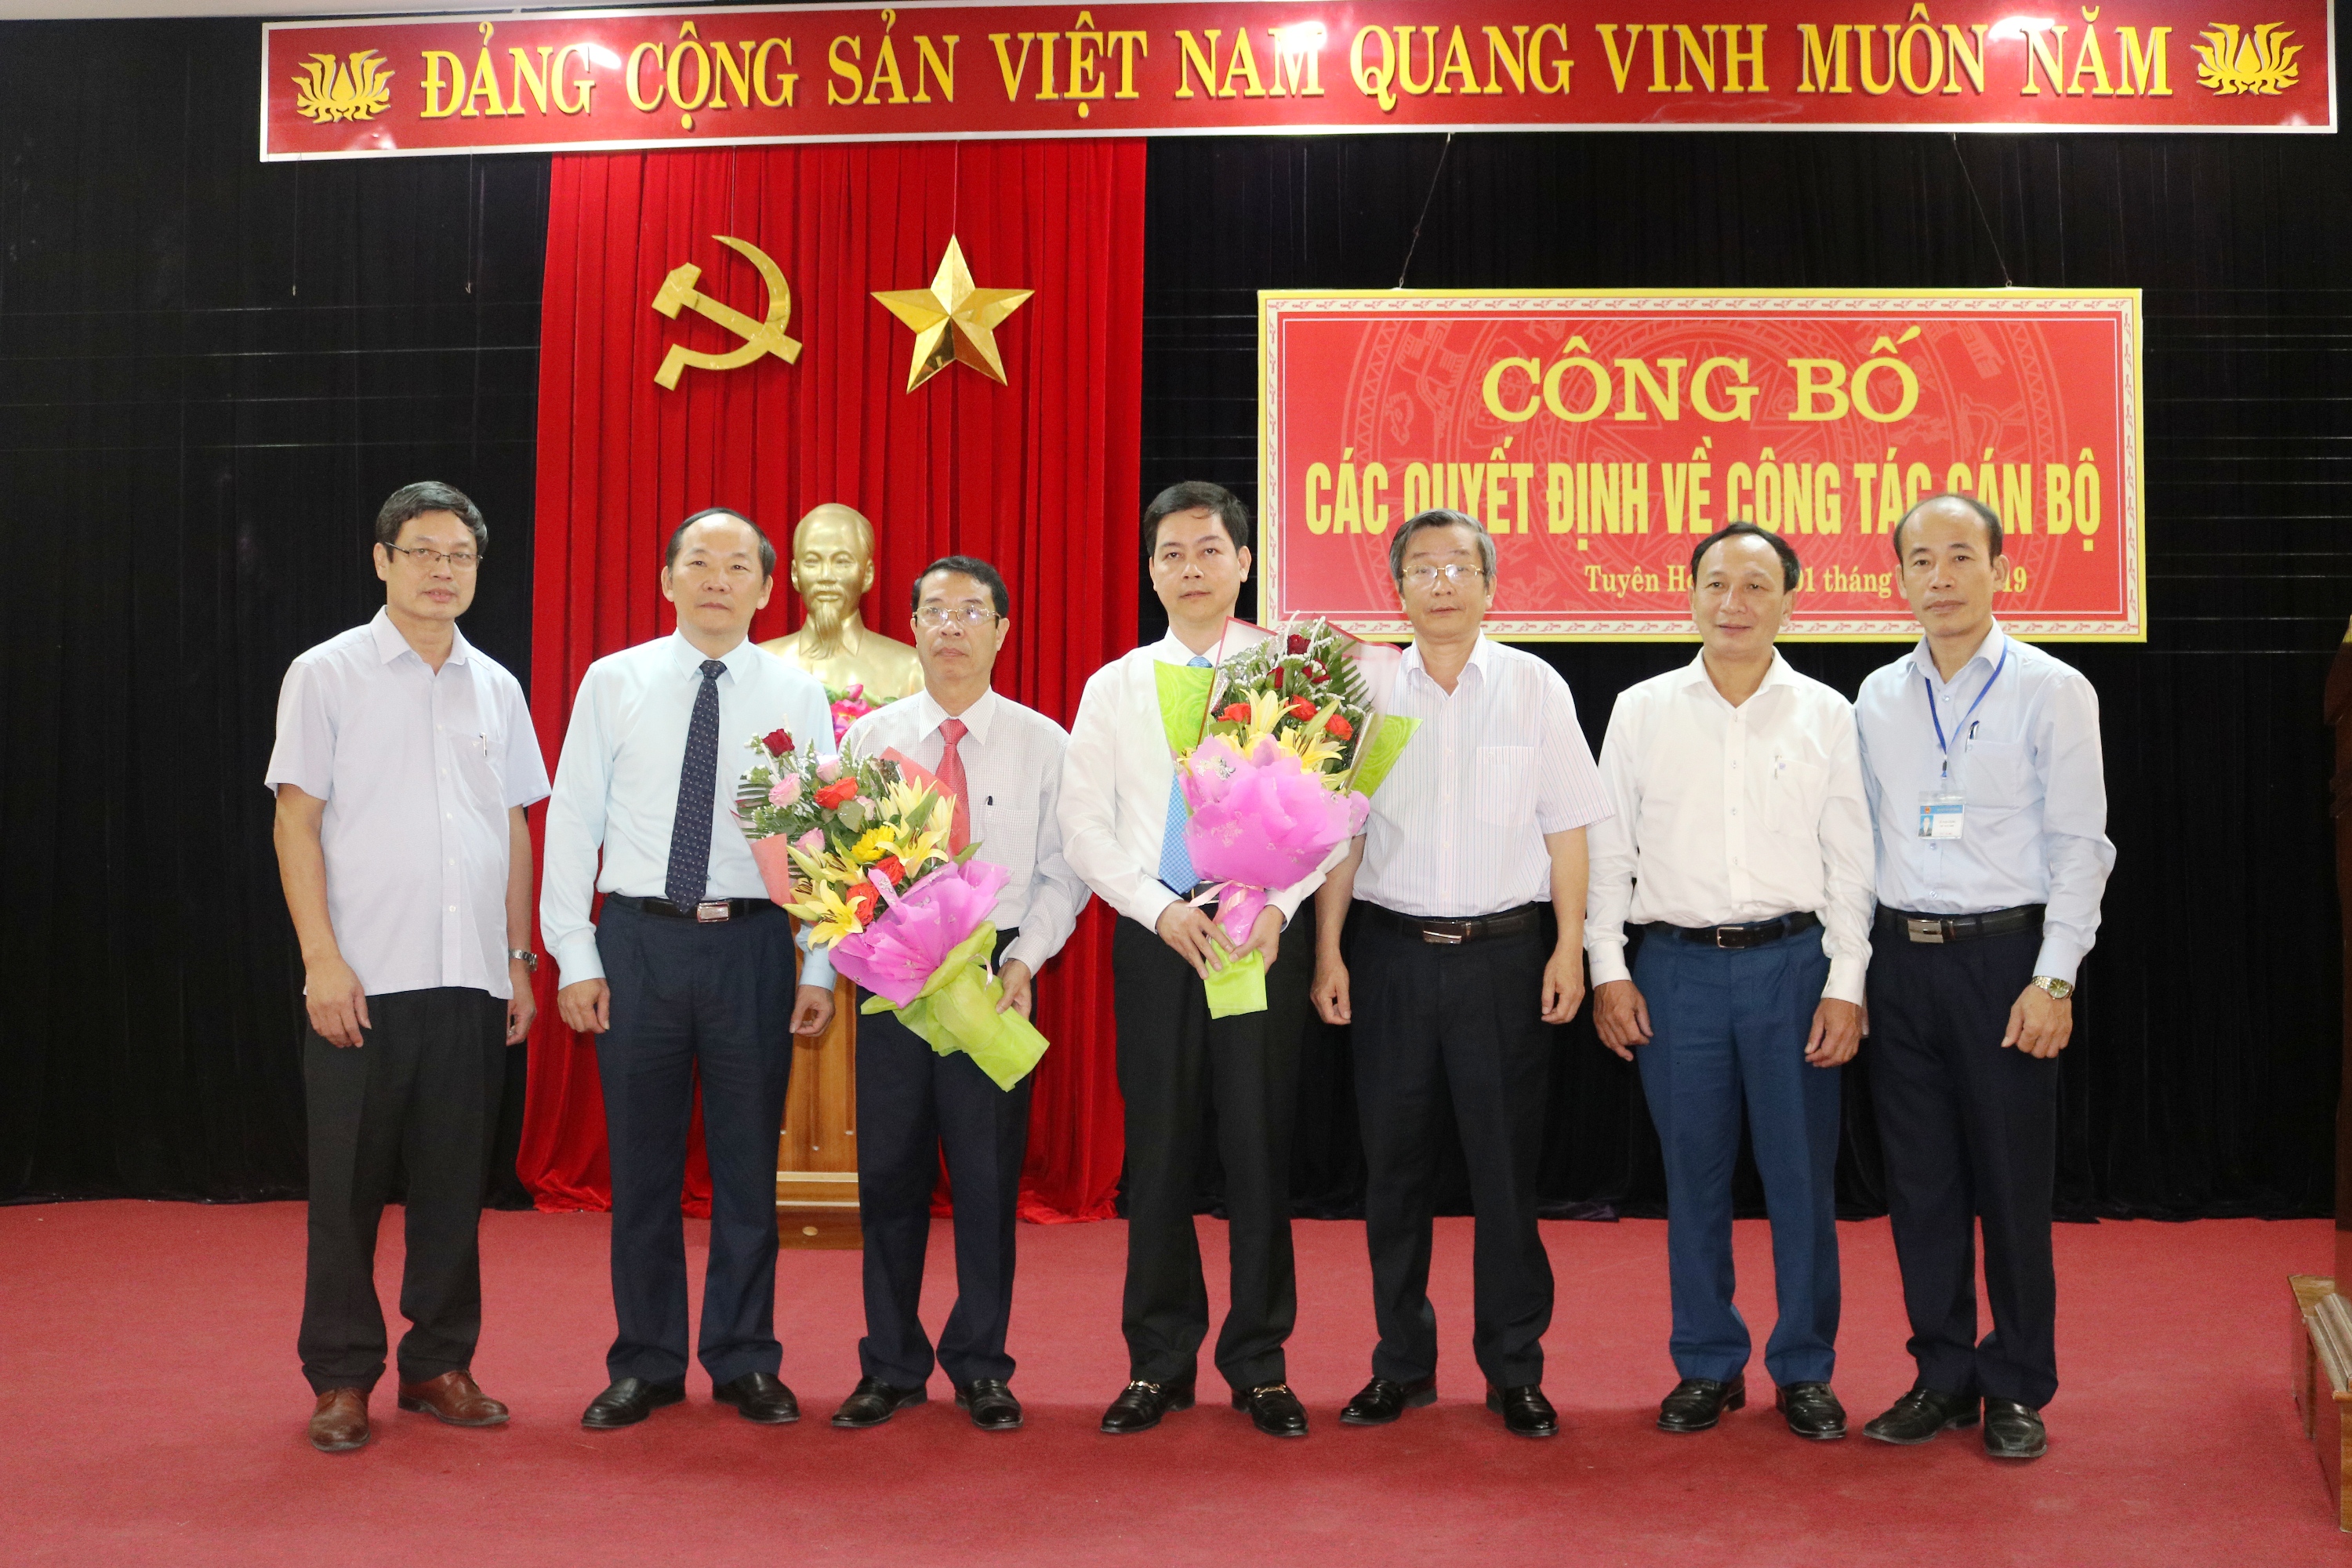 Đồng chí Trần Xuân Vinh, Trưởng ban Tổ chức Tỉnh ủy và Trần Hải Châu, Trưởng ban Nội chính Tỉnh ủy tặng hoa chúc mừng các đồng chí được phân công, điều động